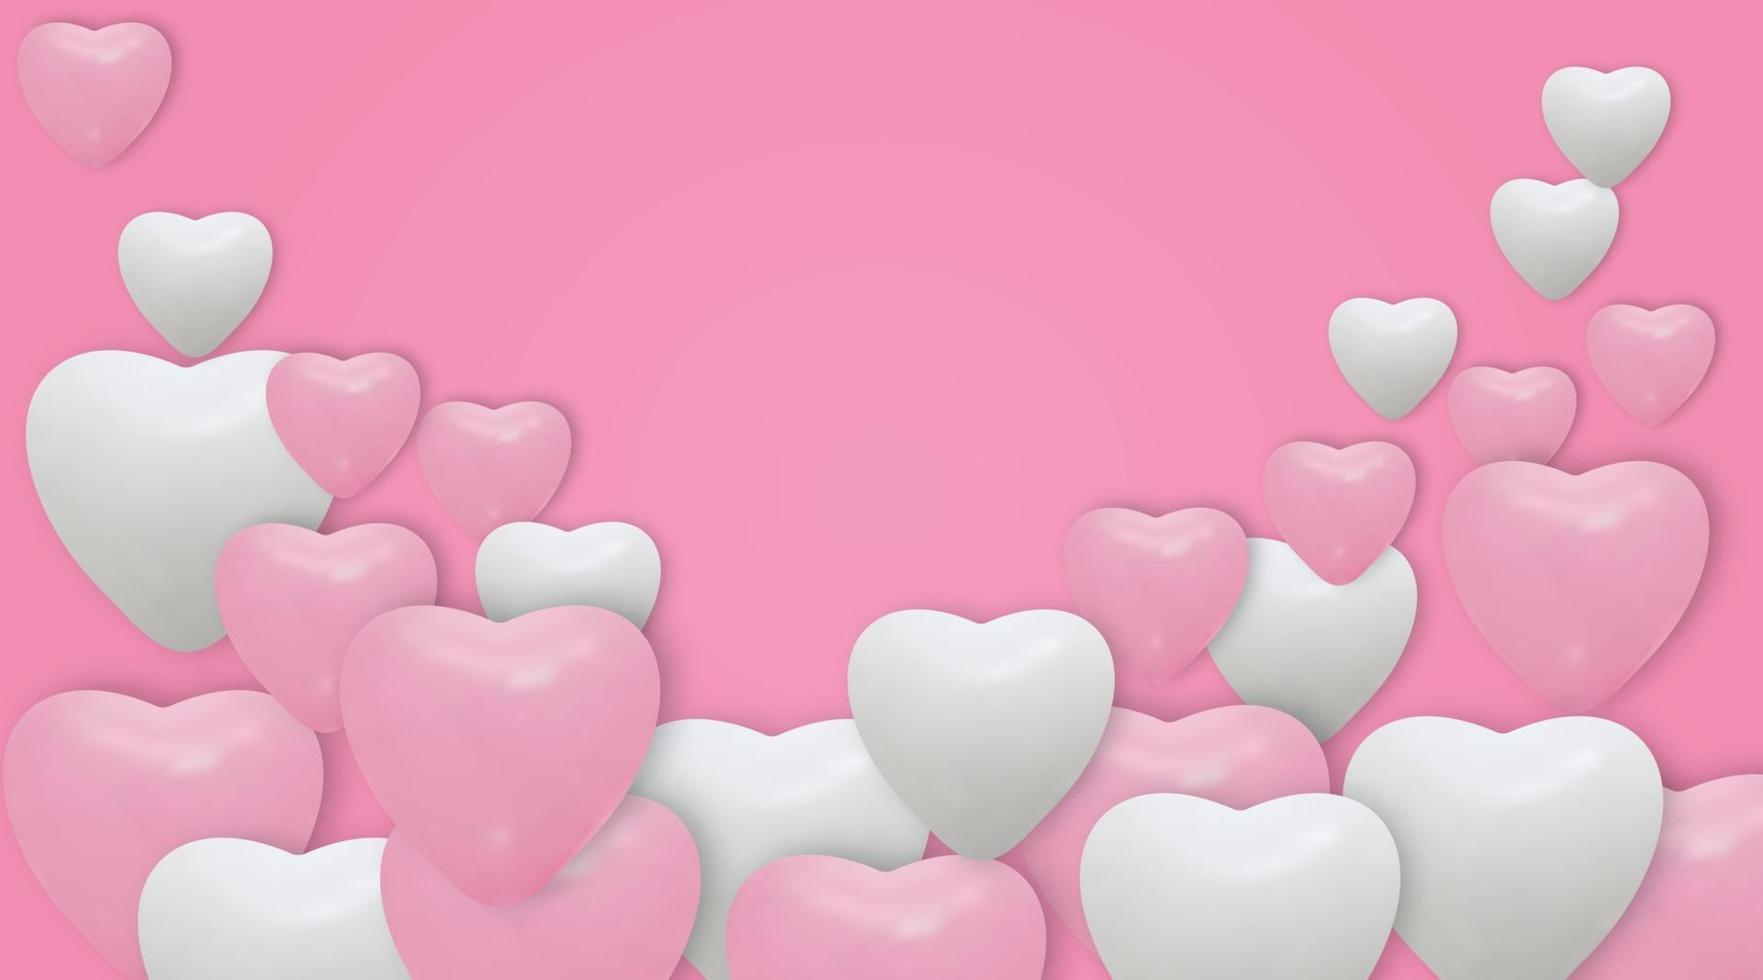 palloncini cuore bianco e rosa su sfondo rosa. palloncini realistici e posto per il testo. illustrazione vettoriale